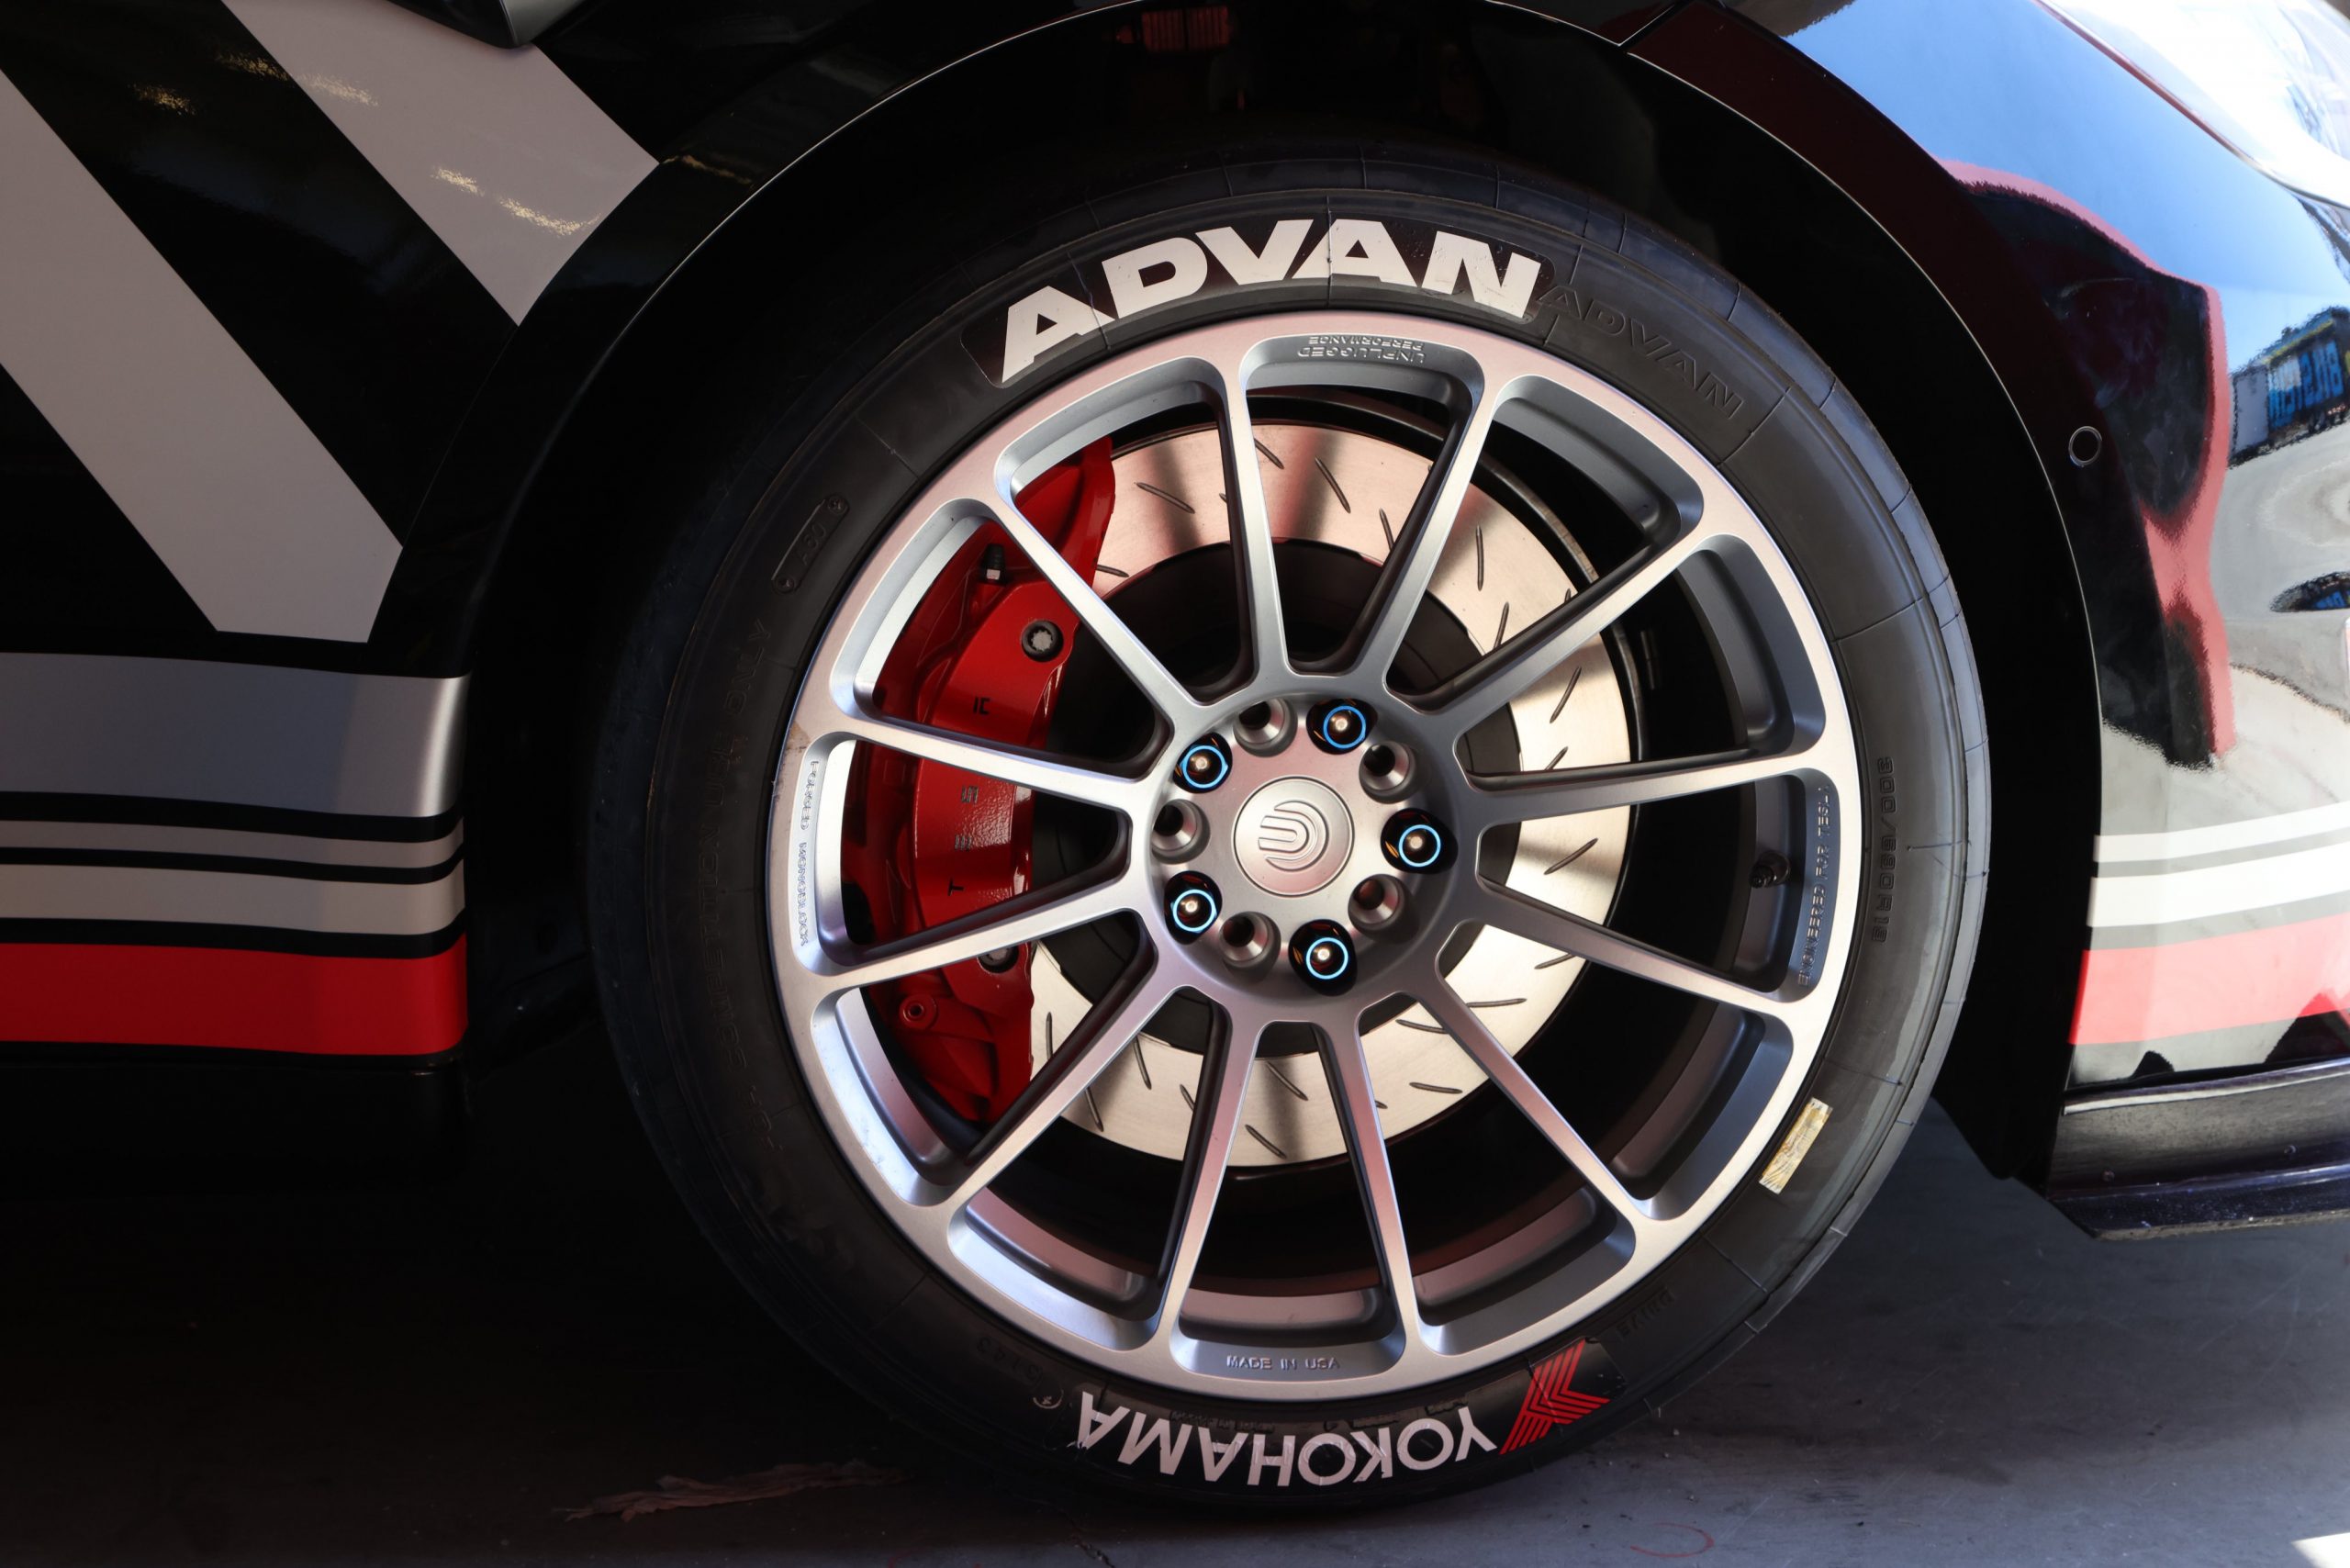 UP Model S Plaid wheels